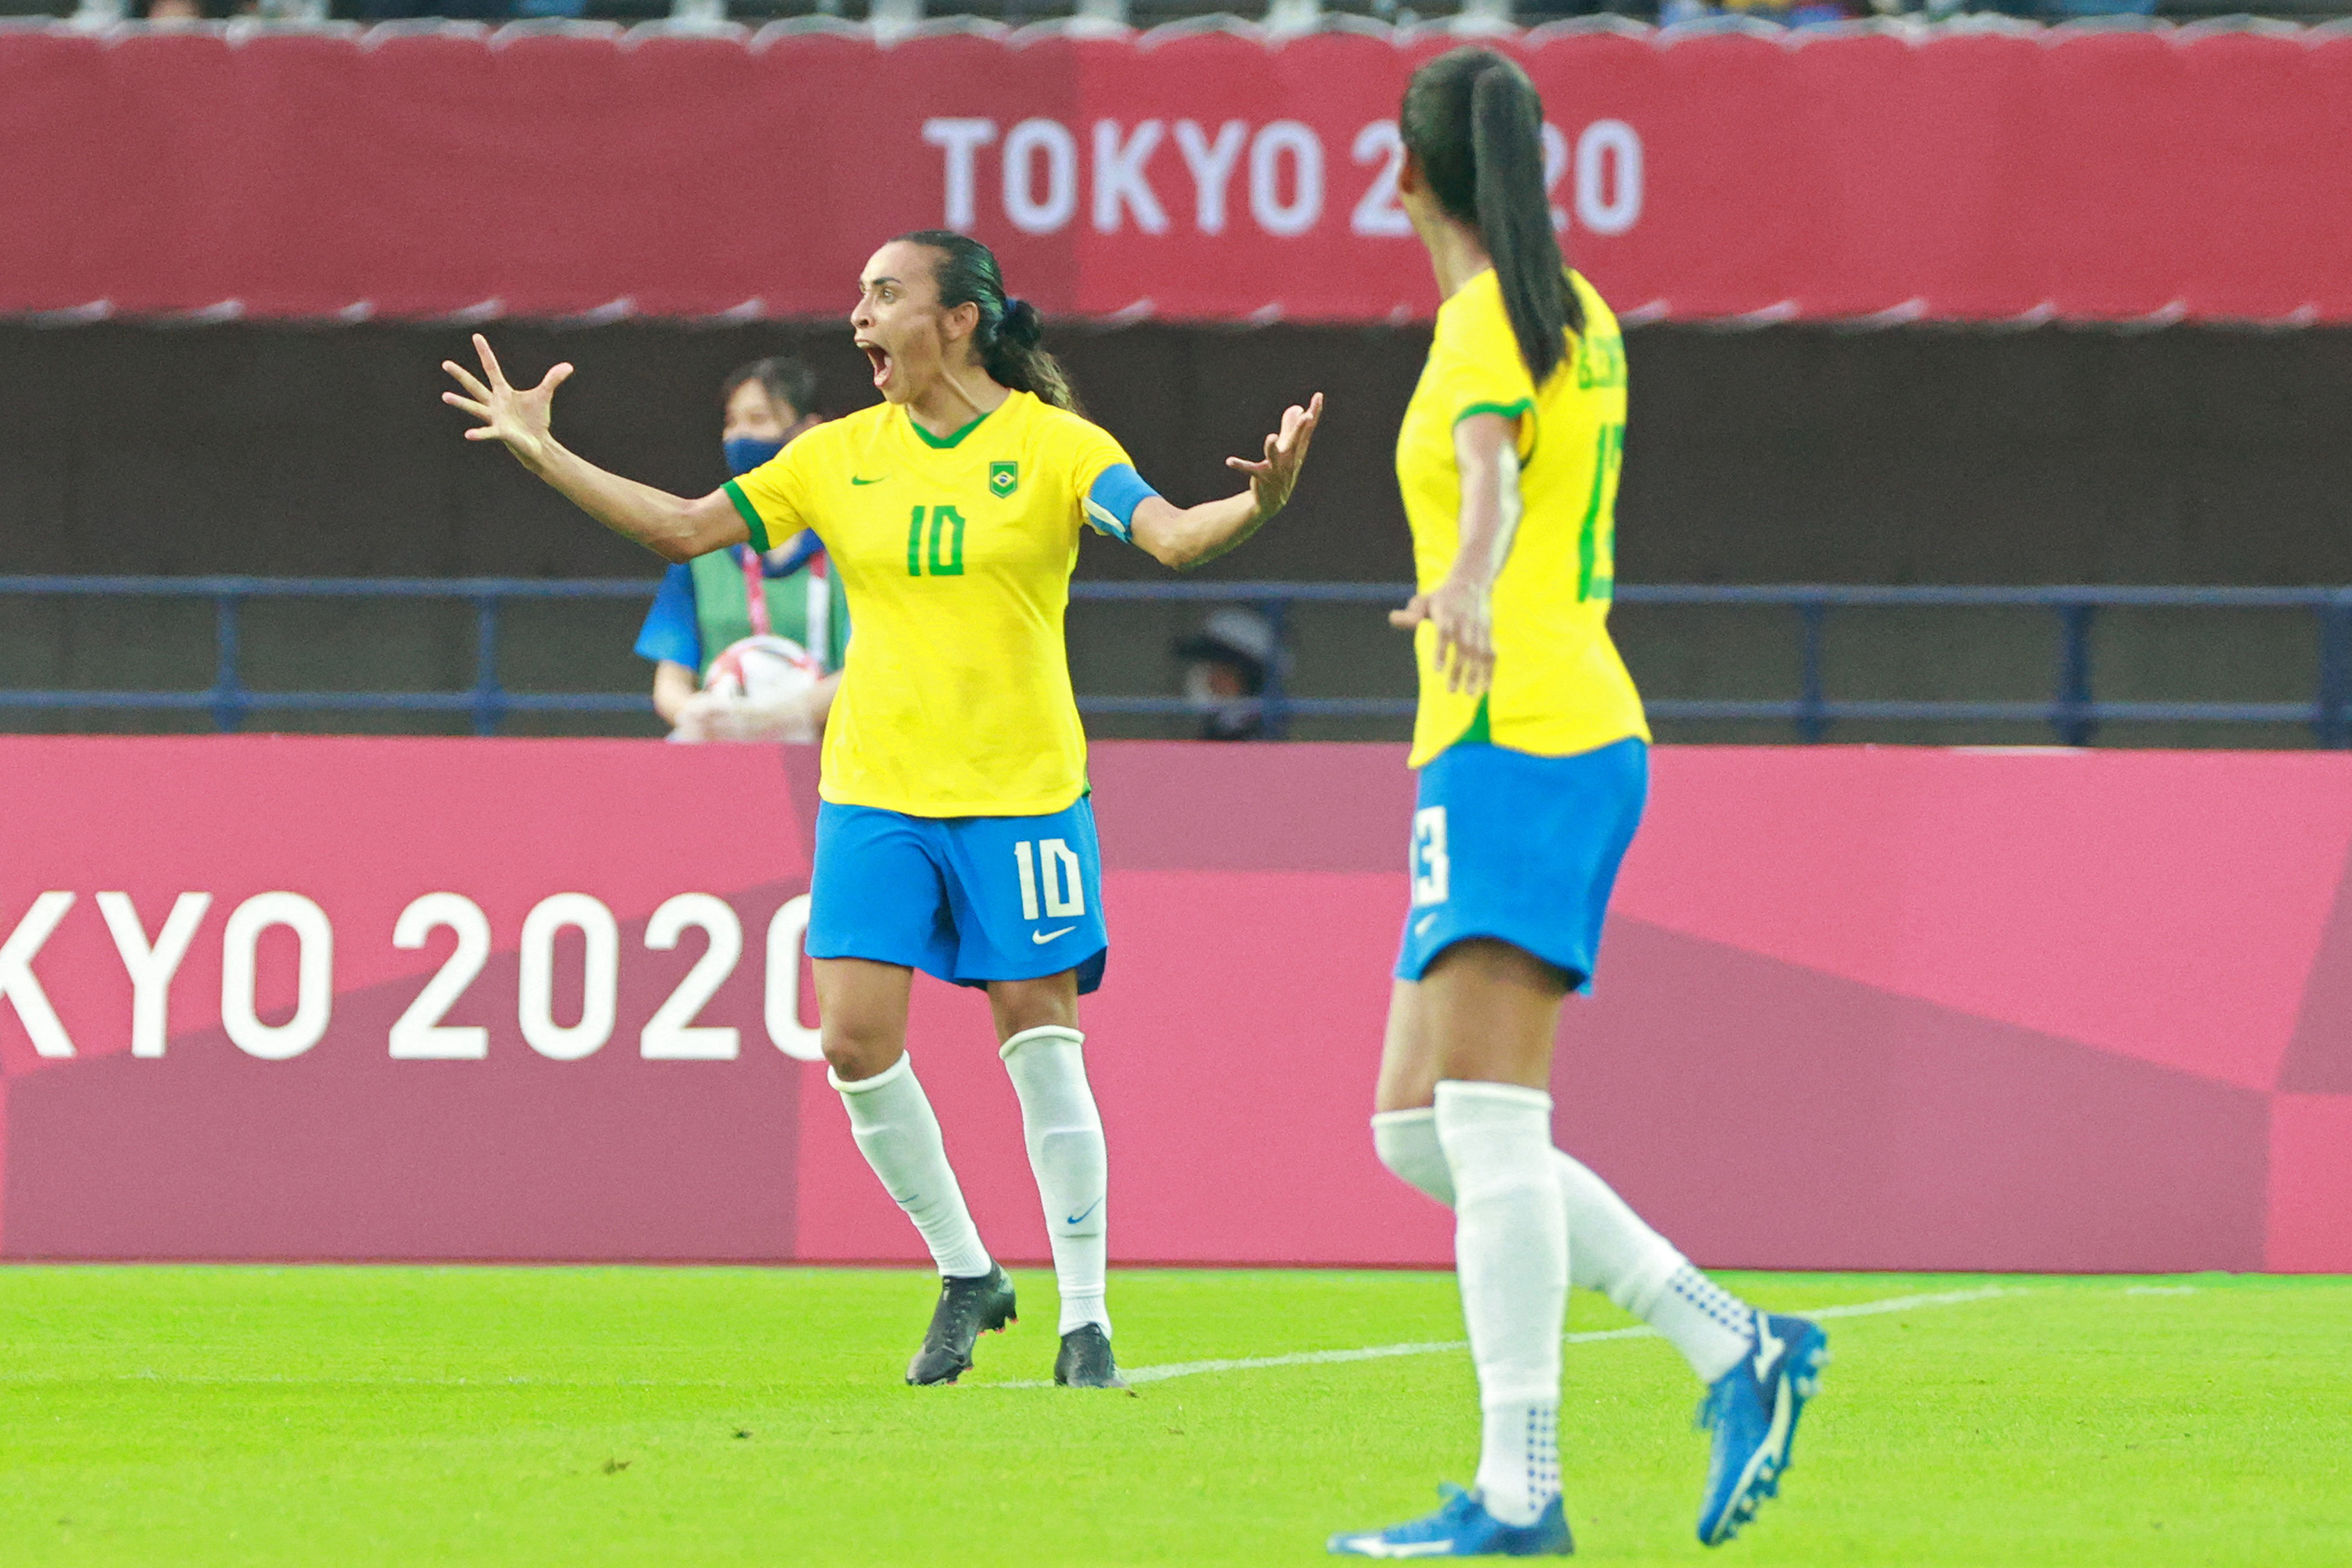 Seleção Brasileira goleia China no futebol feminino dos Jogos